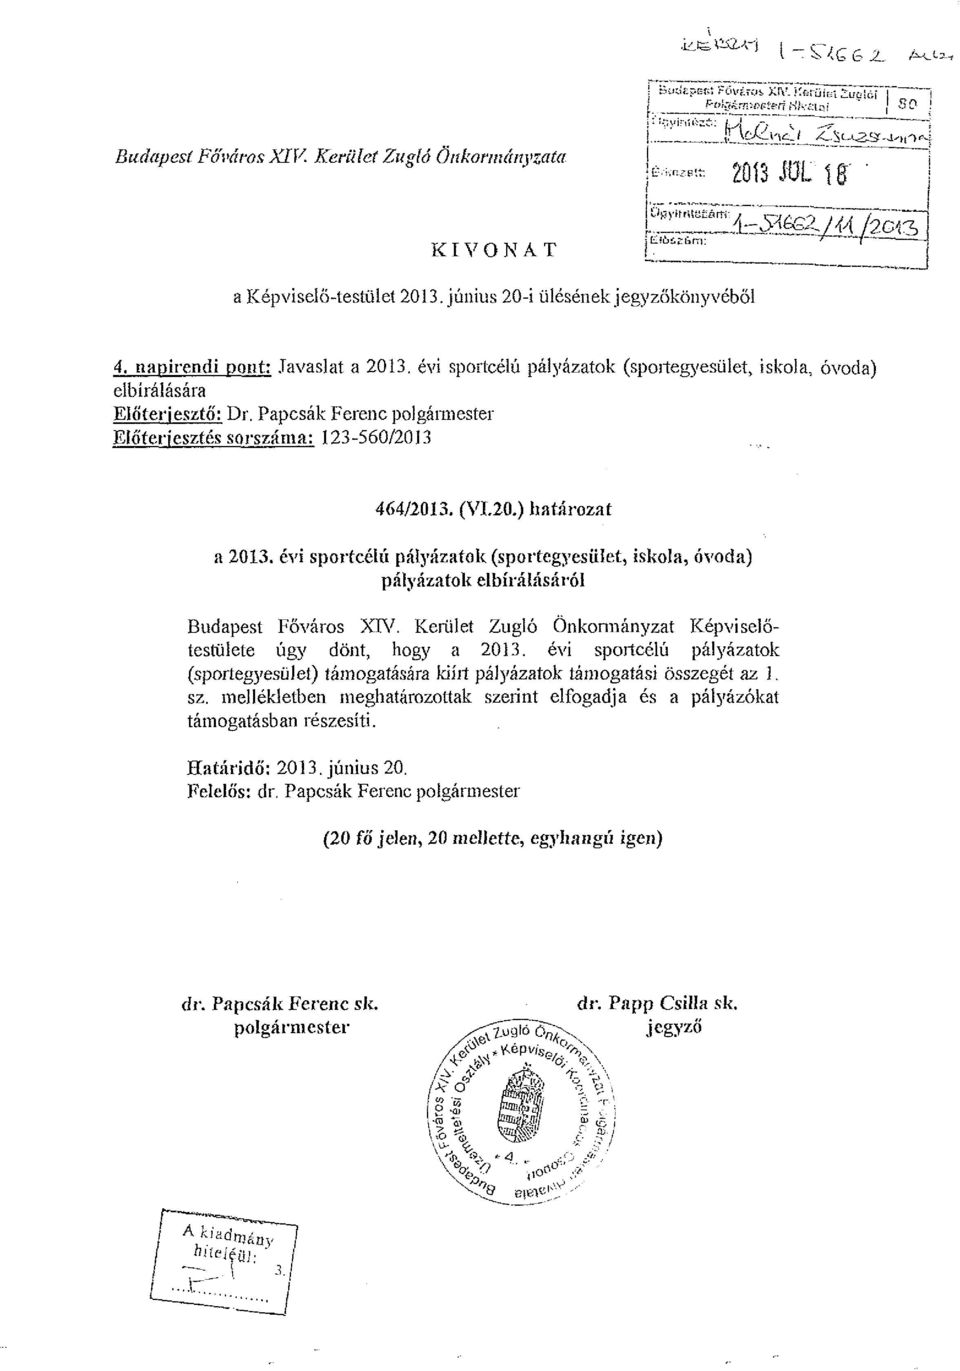 Papcsák Ferenc polgármester Előterjesztés sorszáma: 123-560/2013 464/2013. (VI.20.) határozat a 2013.